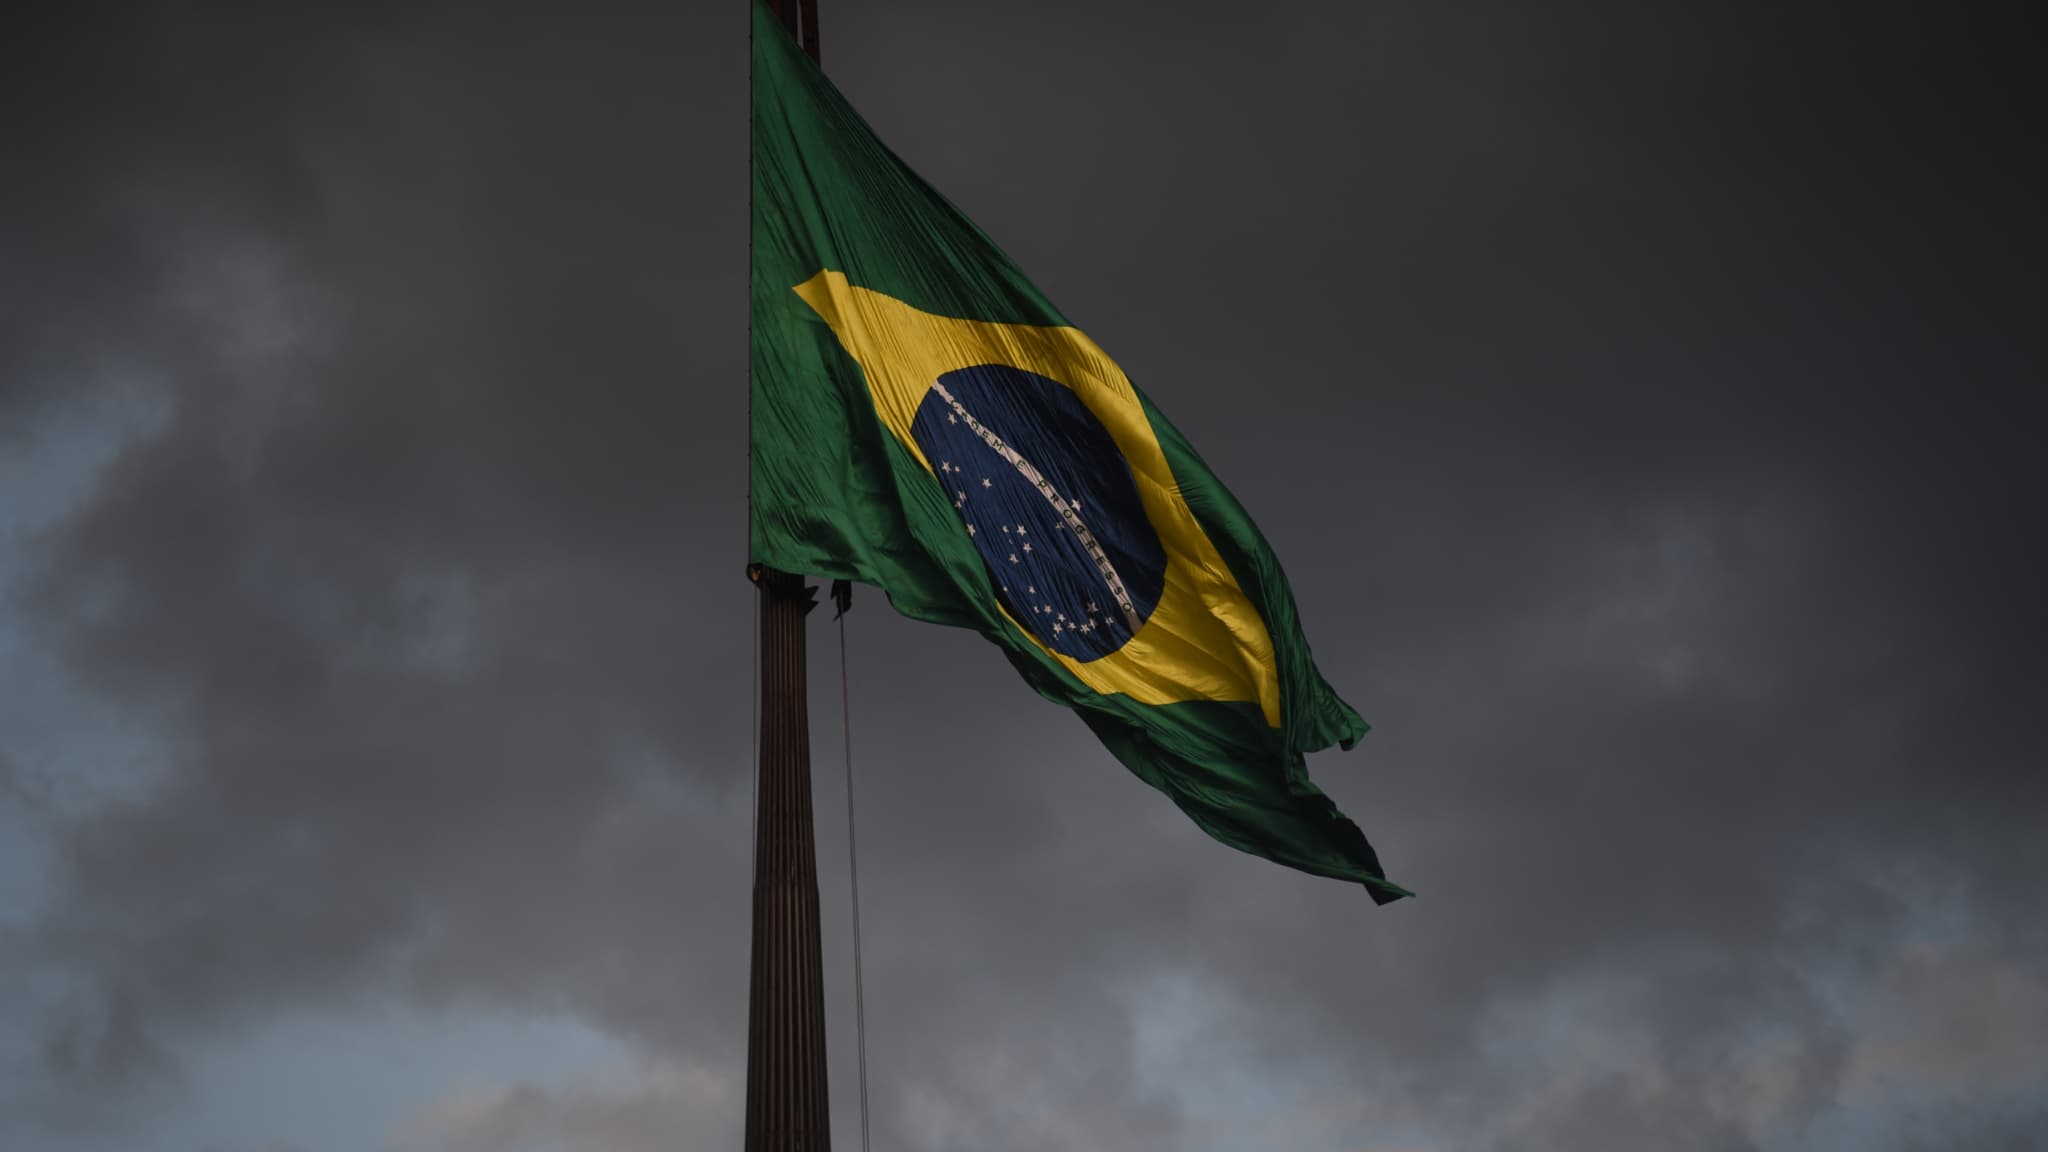 Praias em São Paulo?  Materiais didáticos brasileiros repletos de erros